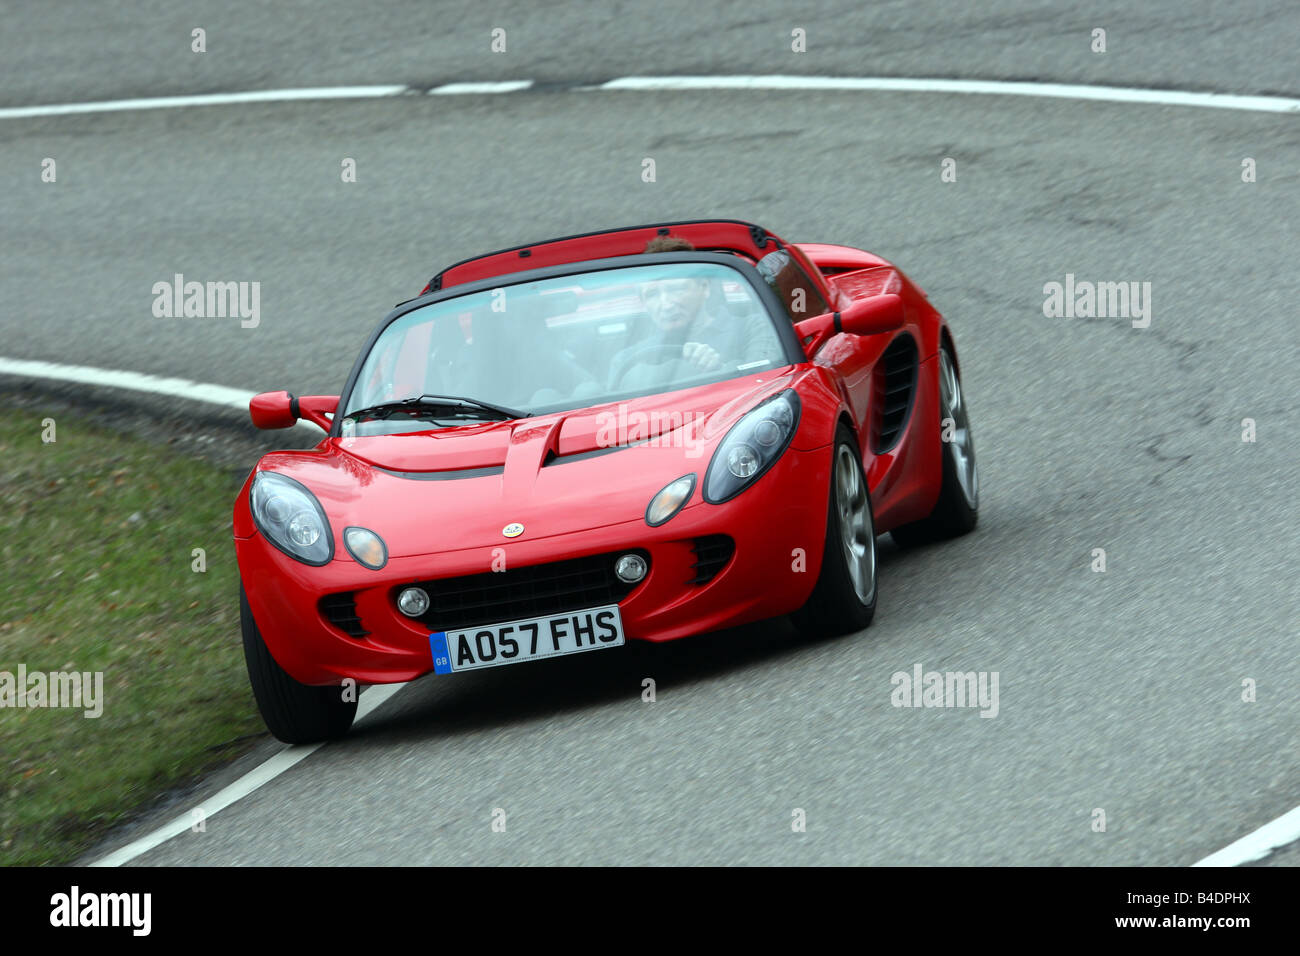 Lotus Elise SC, l'année de modèle 2008-, rouge, la conduite, la diagonale de l'avant, vue frontale, country road, open top Banque D'Images